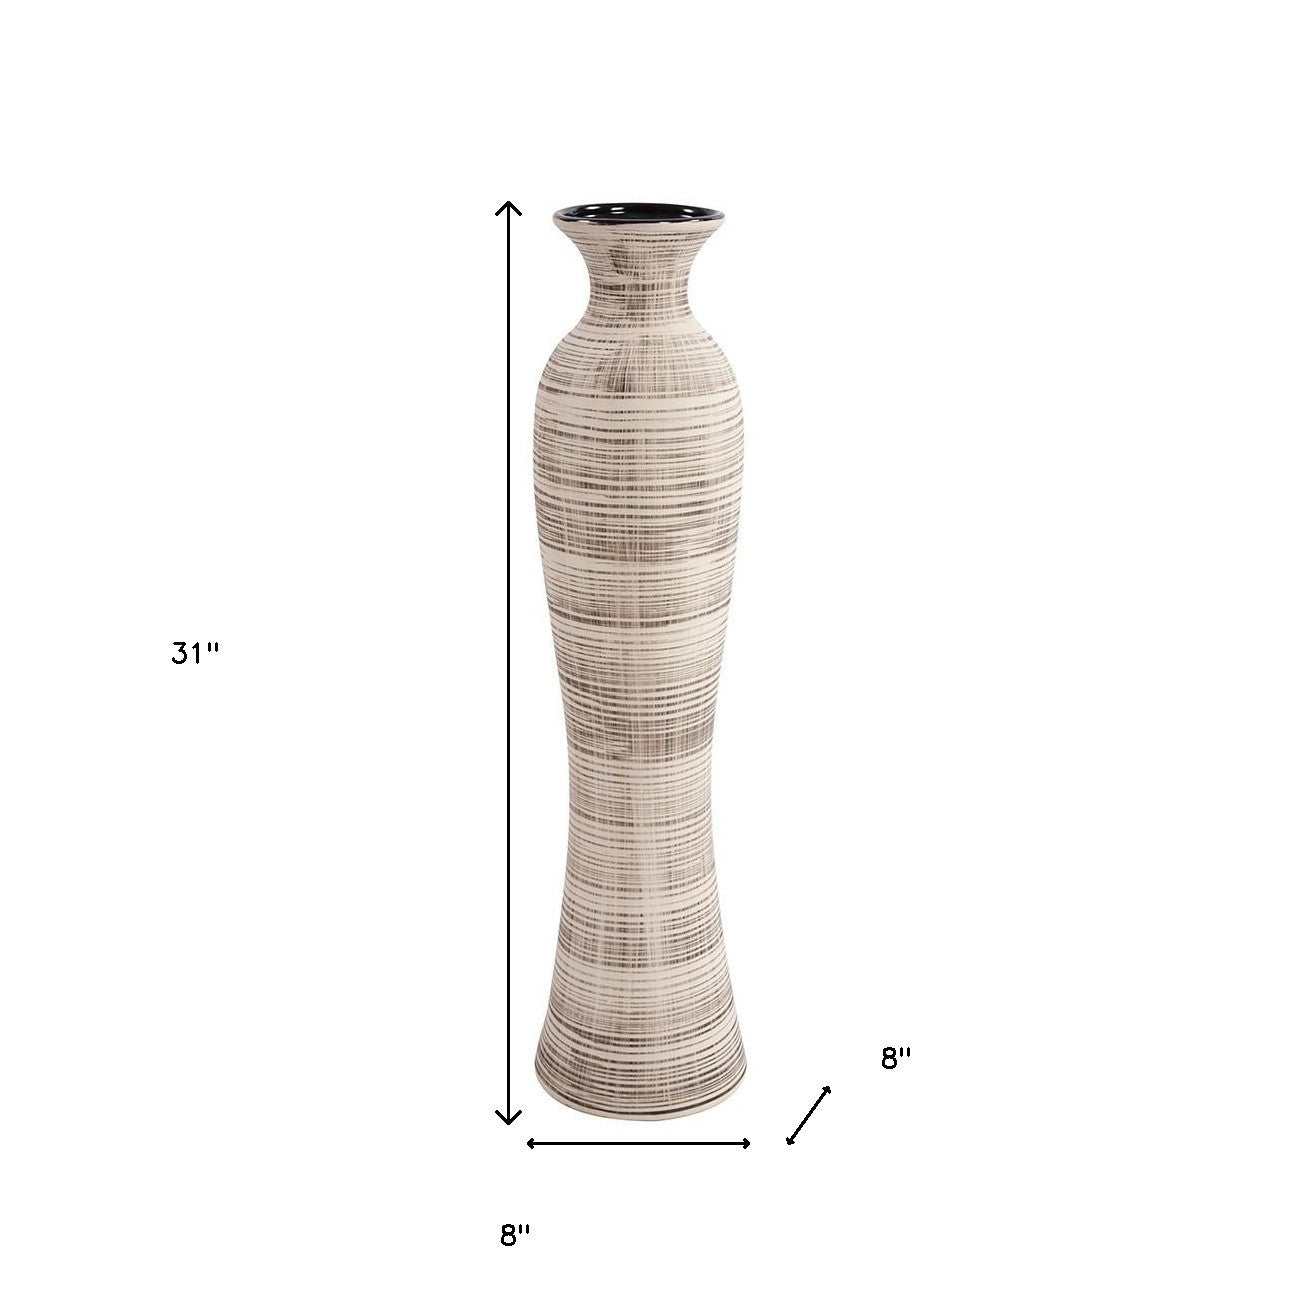 31" Ceramic Brown and Beige Striped Bud Floor Vase